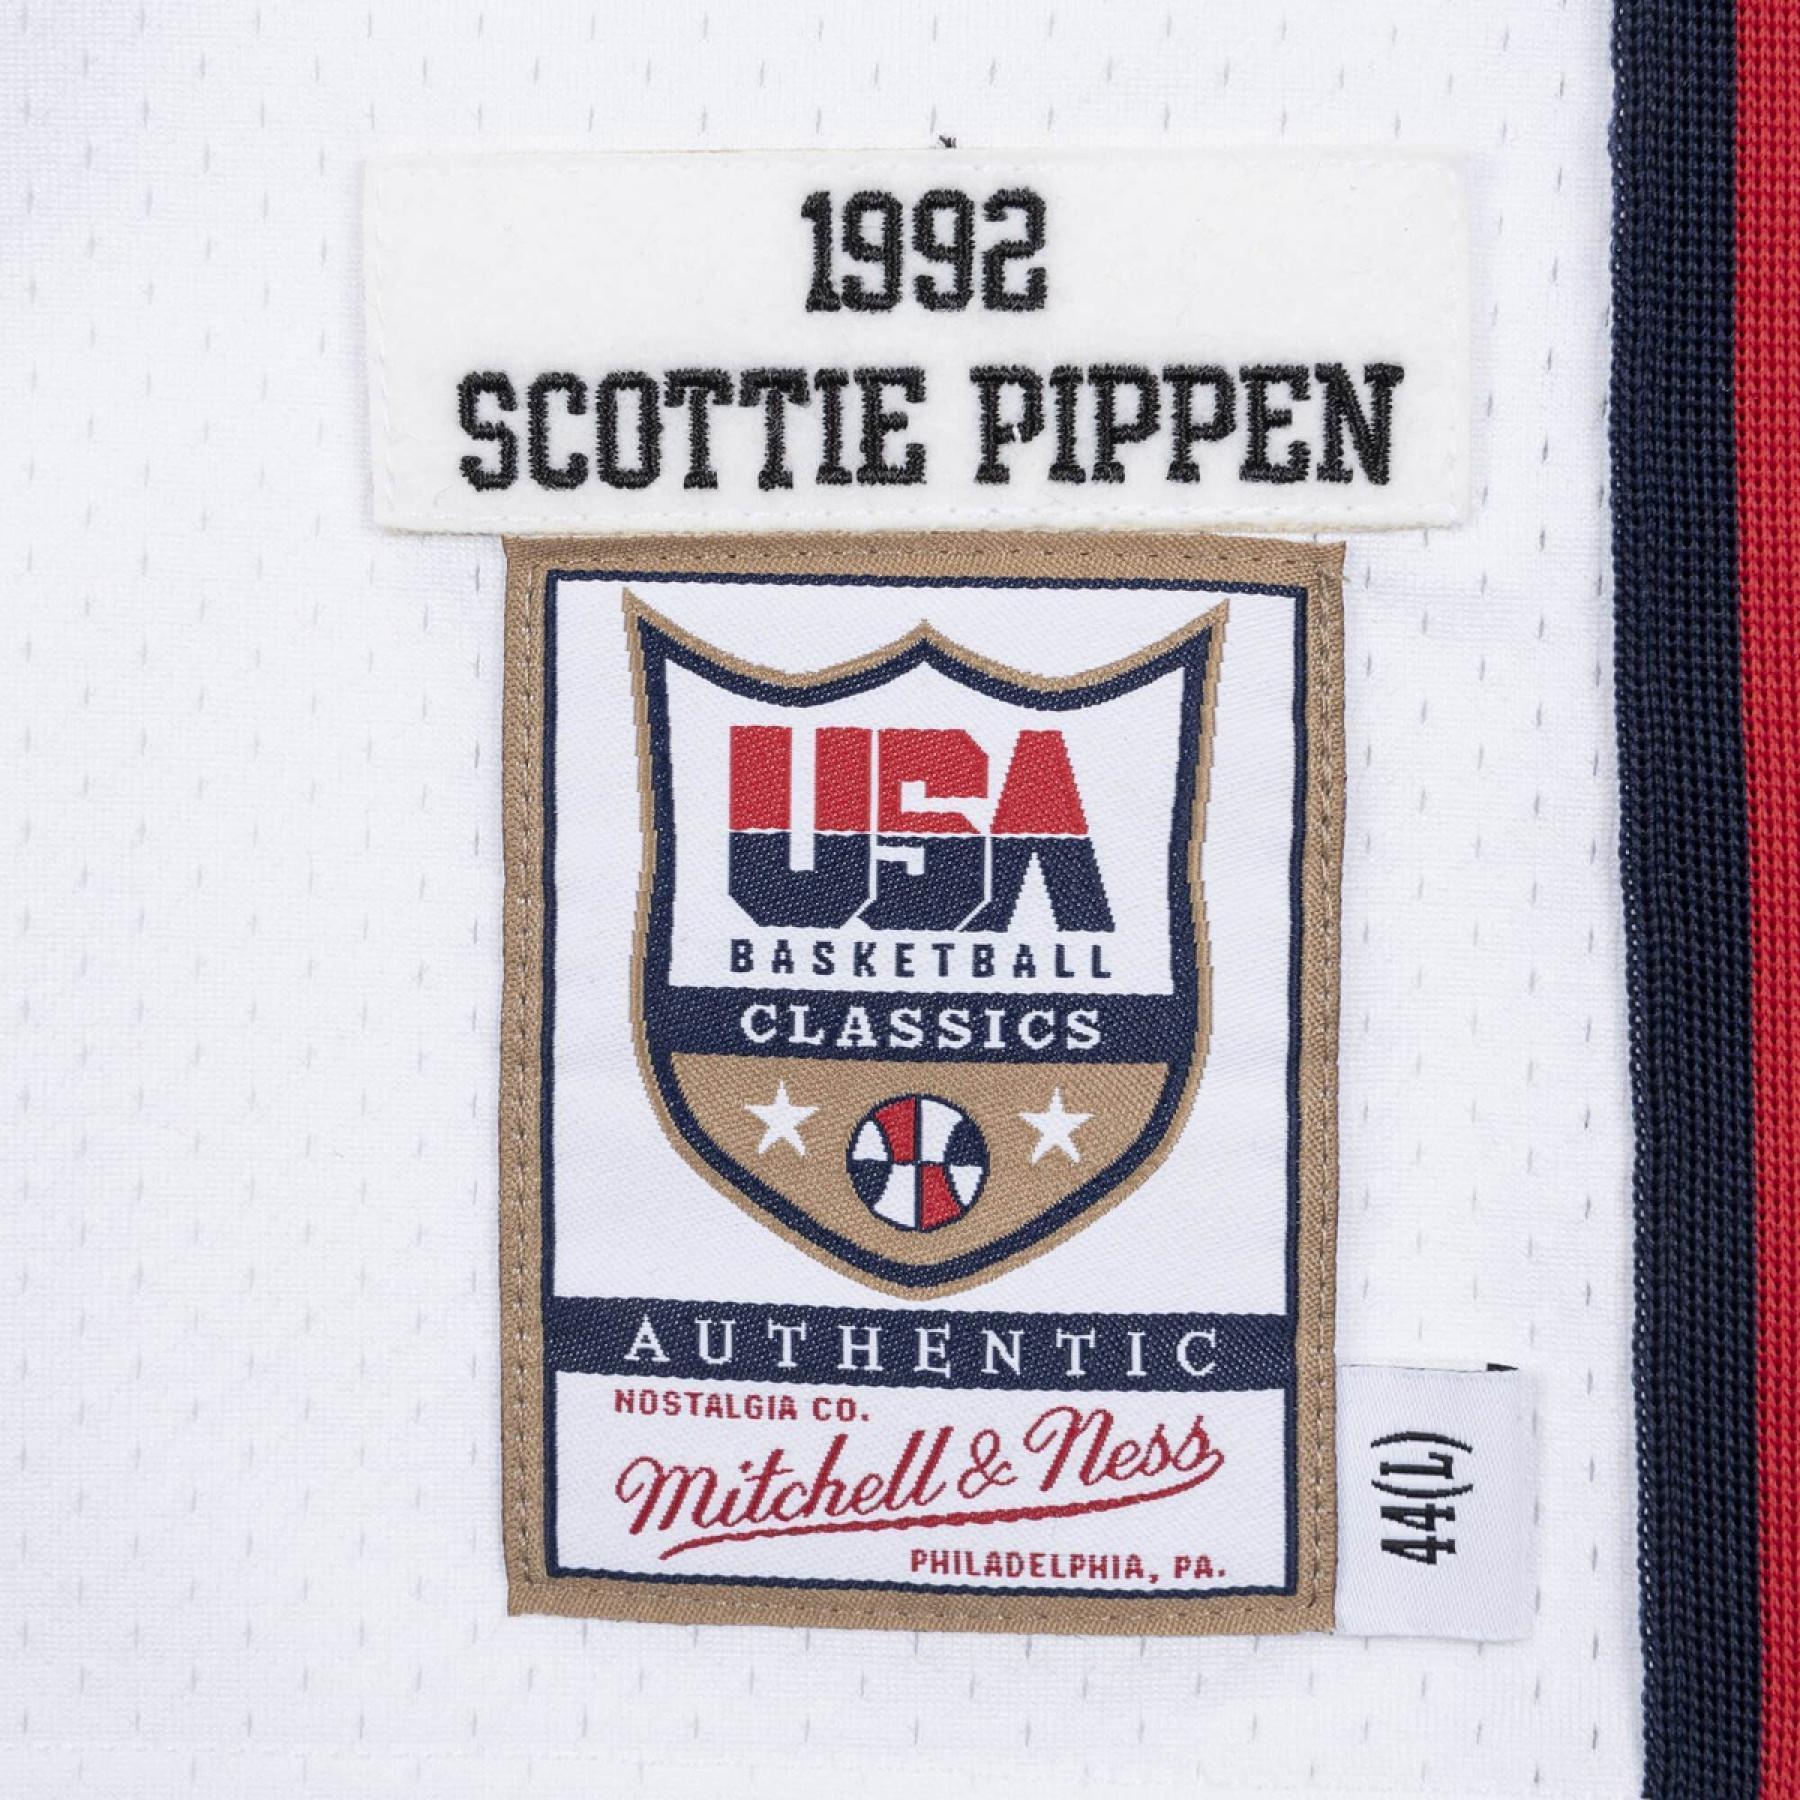 Camiseta auténtica del equipo USA Scottie Pippen 1992